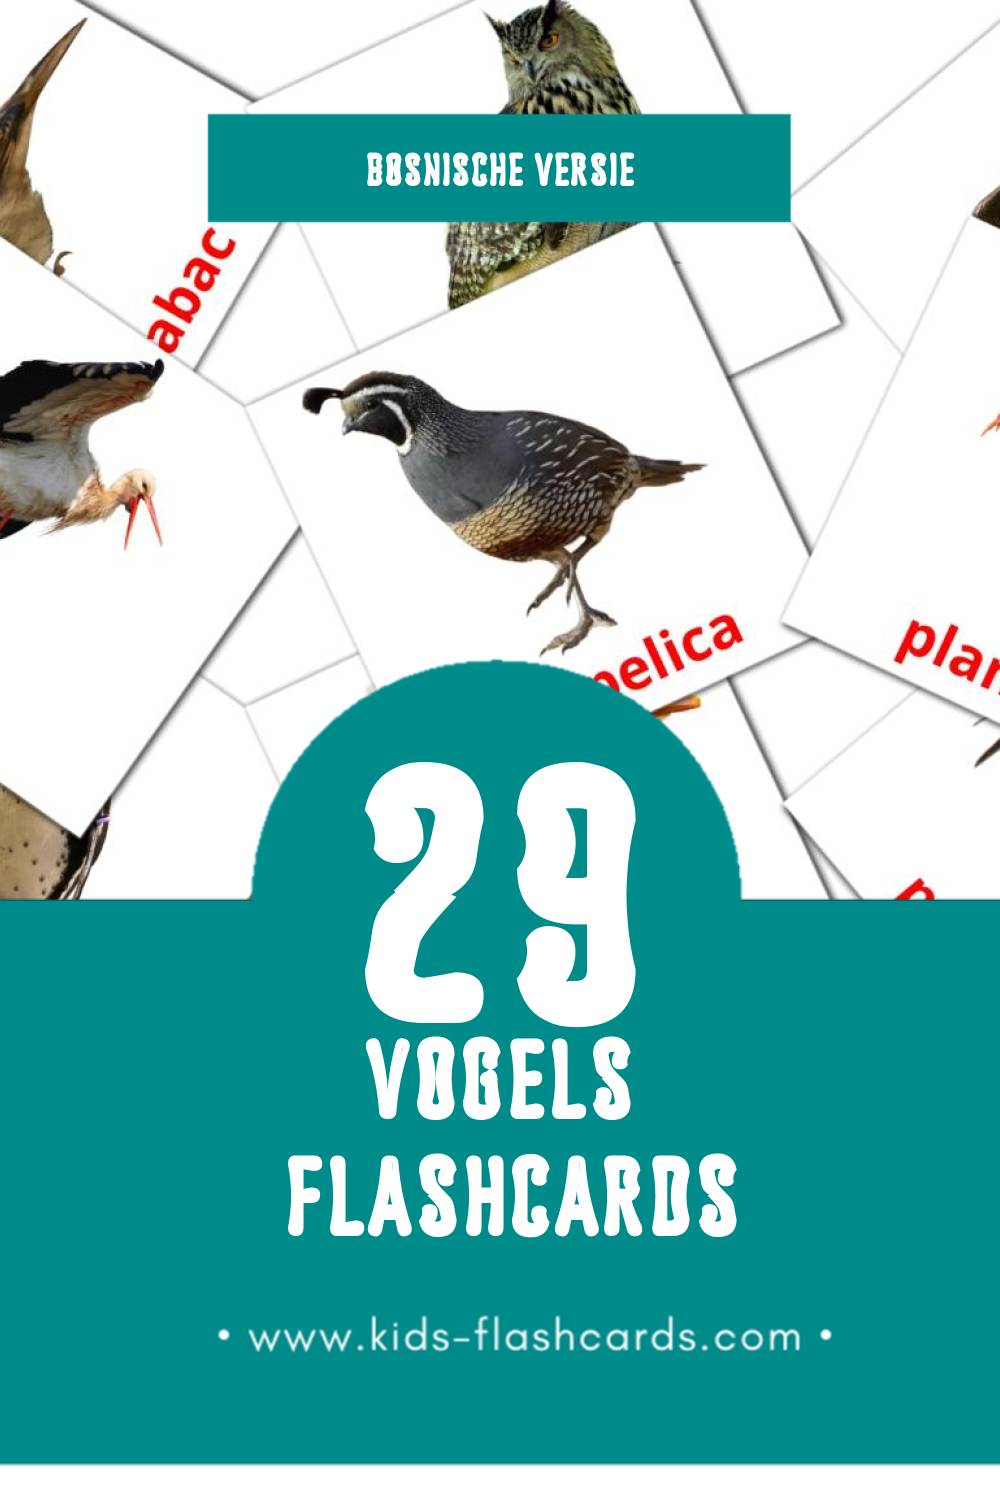 Visuele Ptice Flashcards voor Kleuters (29 kaarten in het Bosnisch)